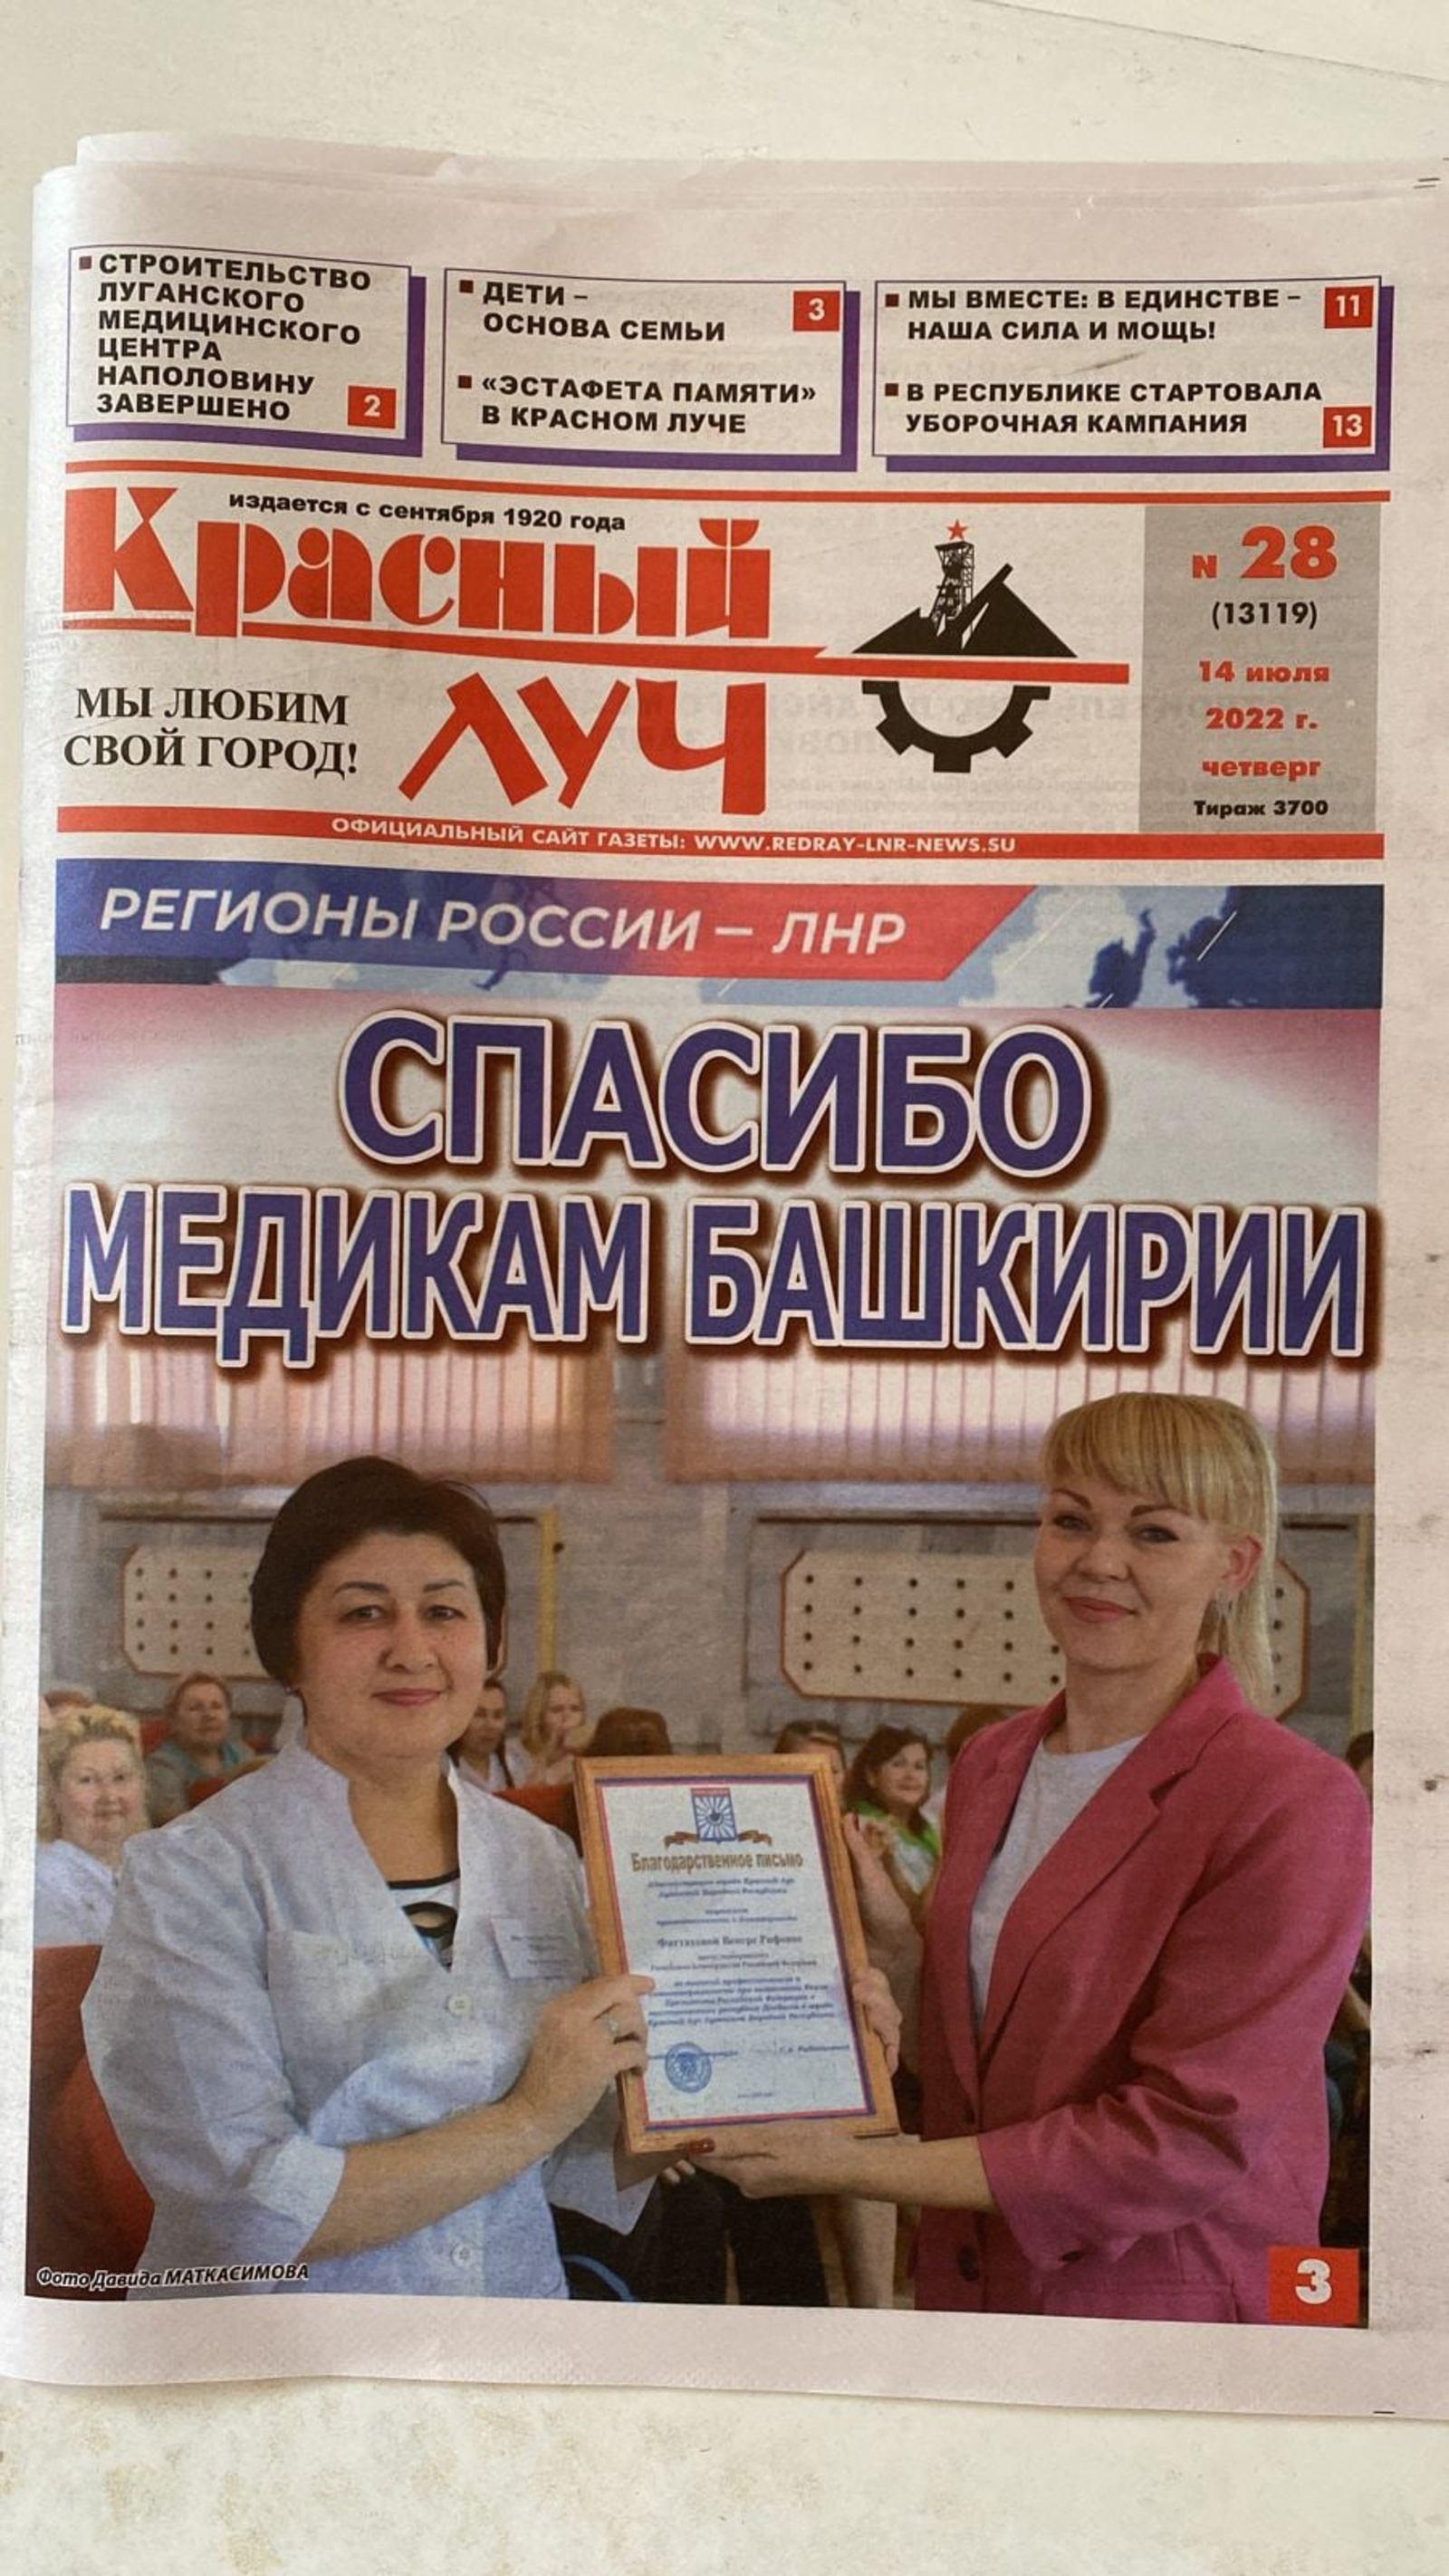 Медиков Башкирии жители ЛНР поблагодарили в местном СМИ